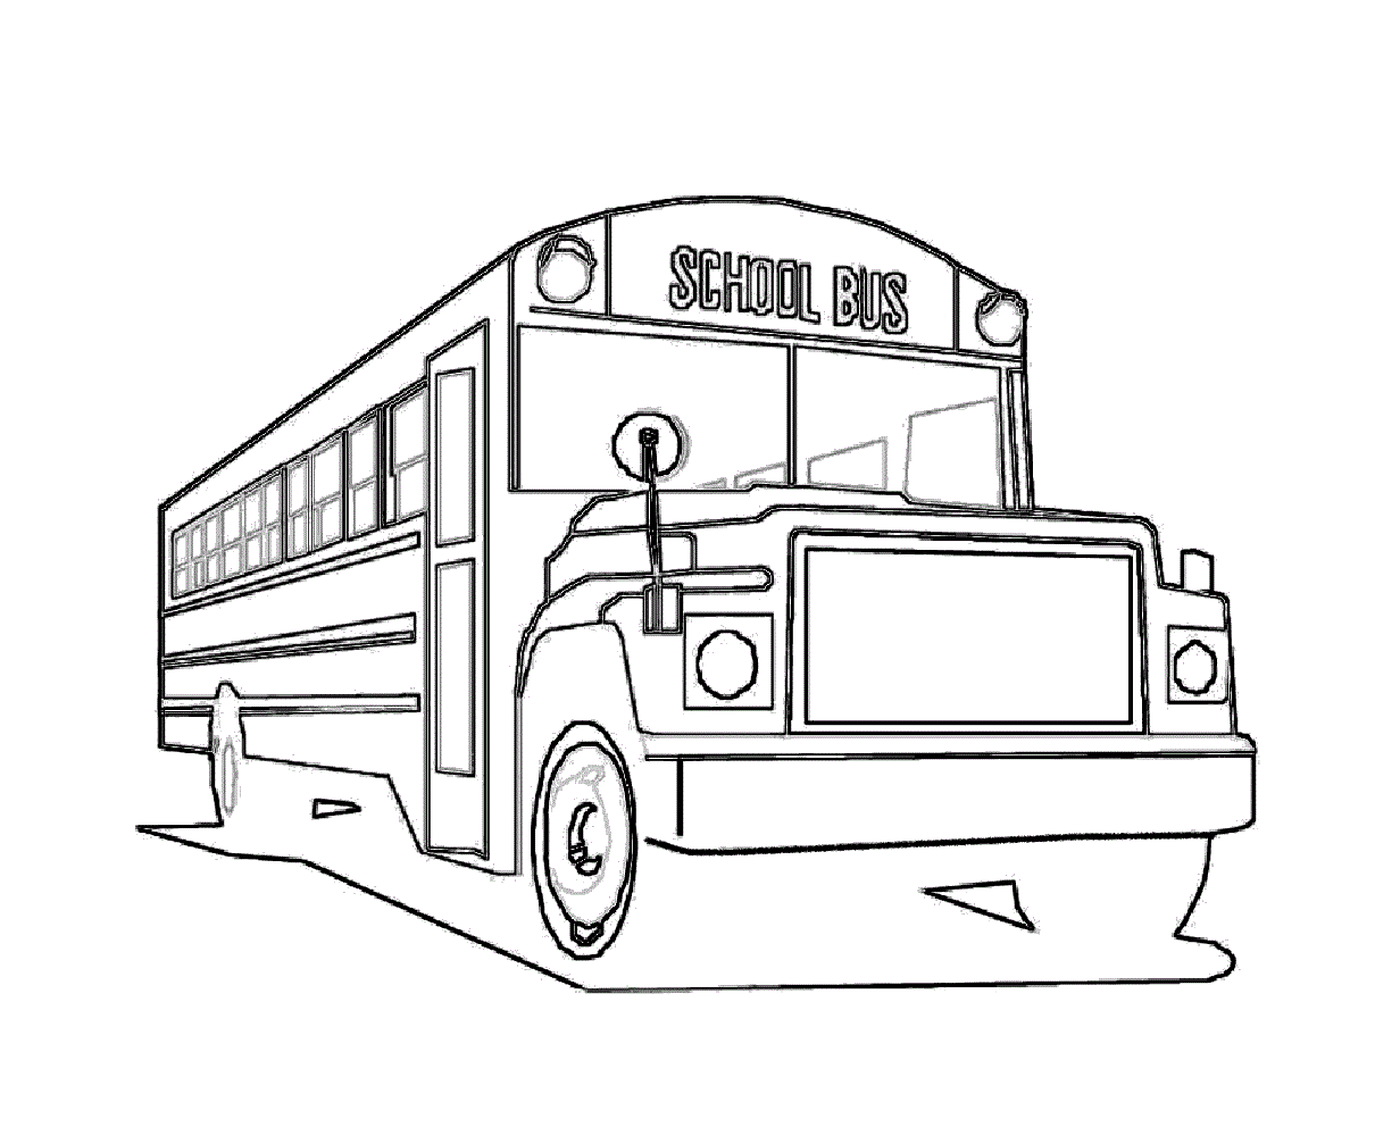   Un bus scolaire cool 